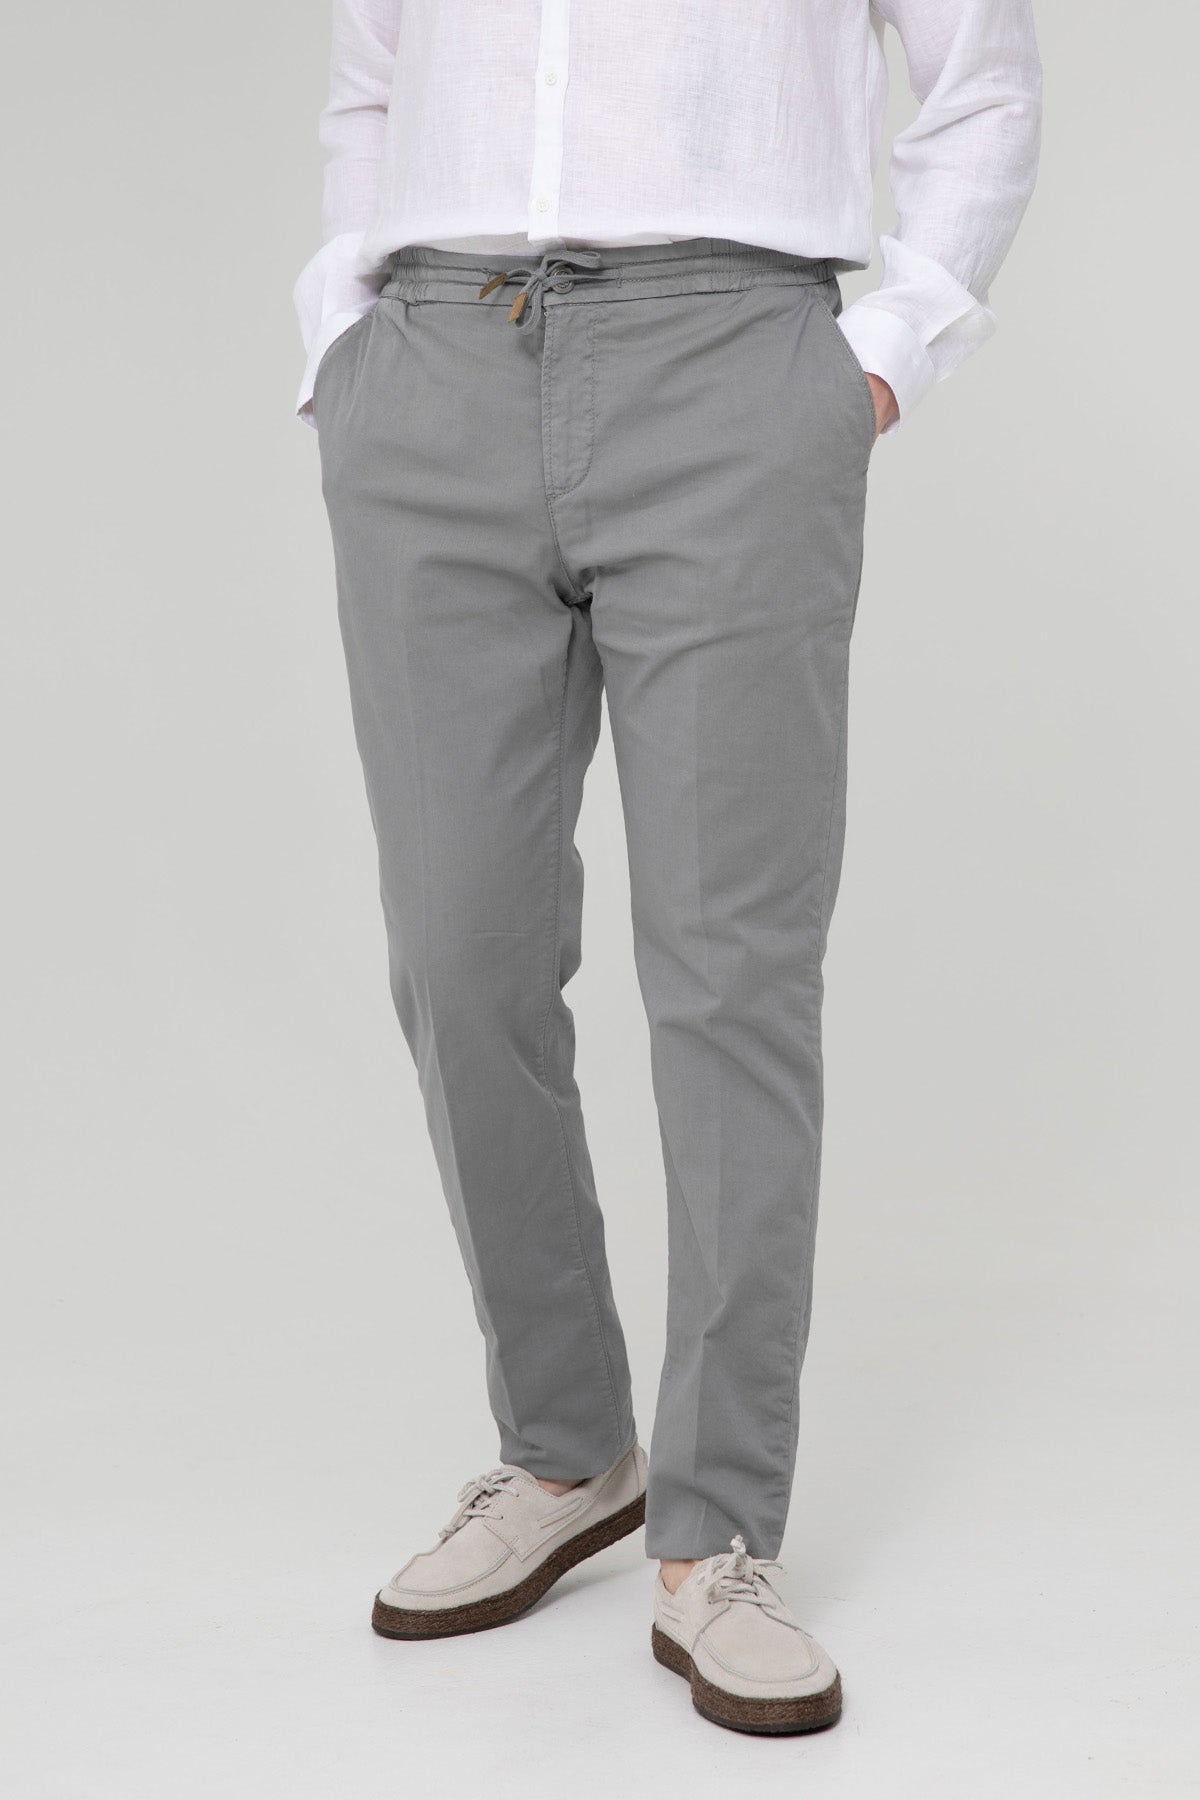 Richard J. Brown Malindi Yandan Cepli Pantolon-Libas Trendy Fashion Store